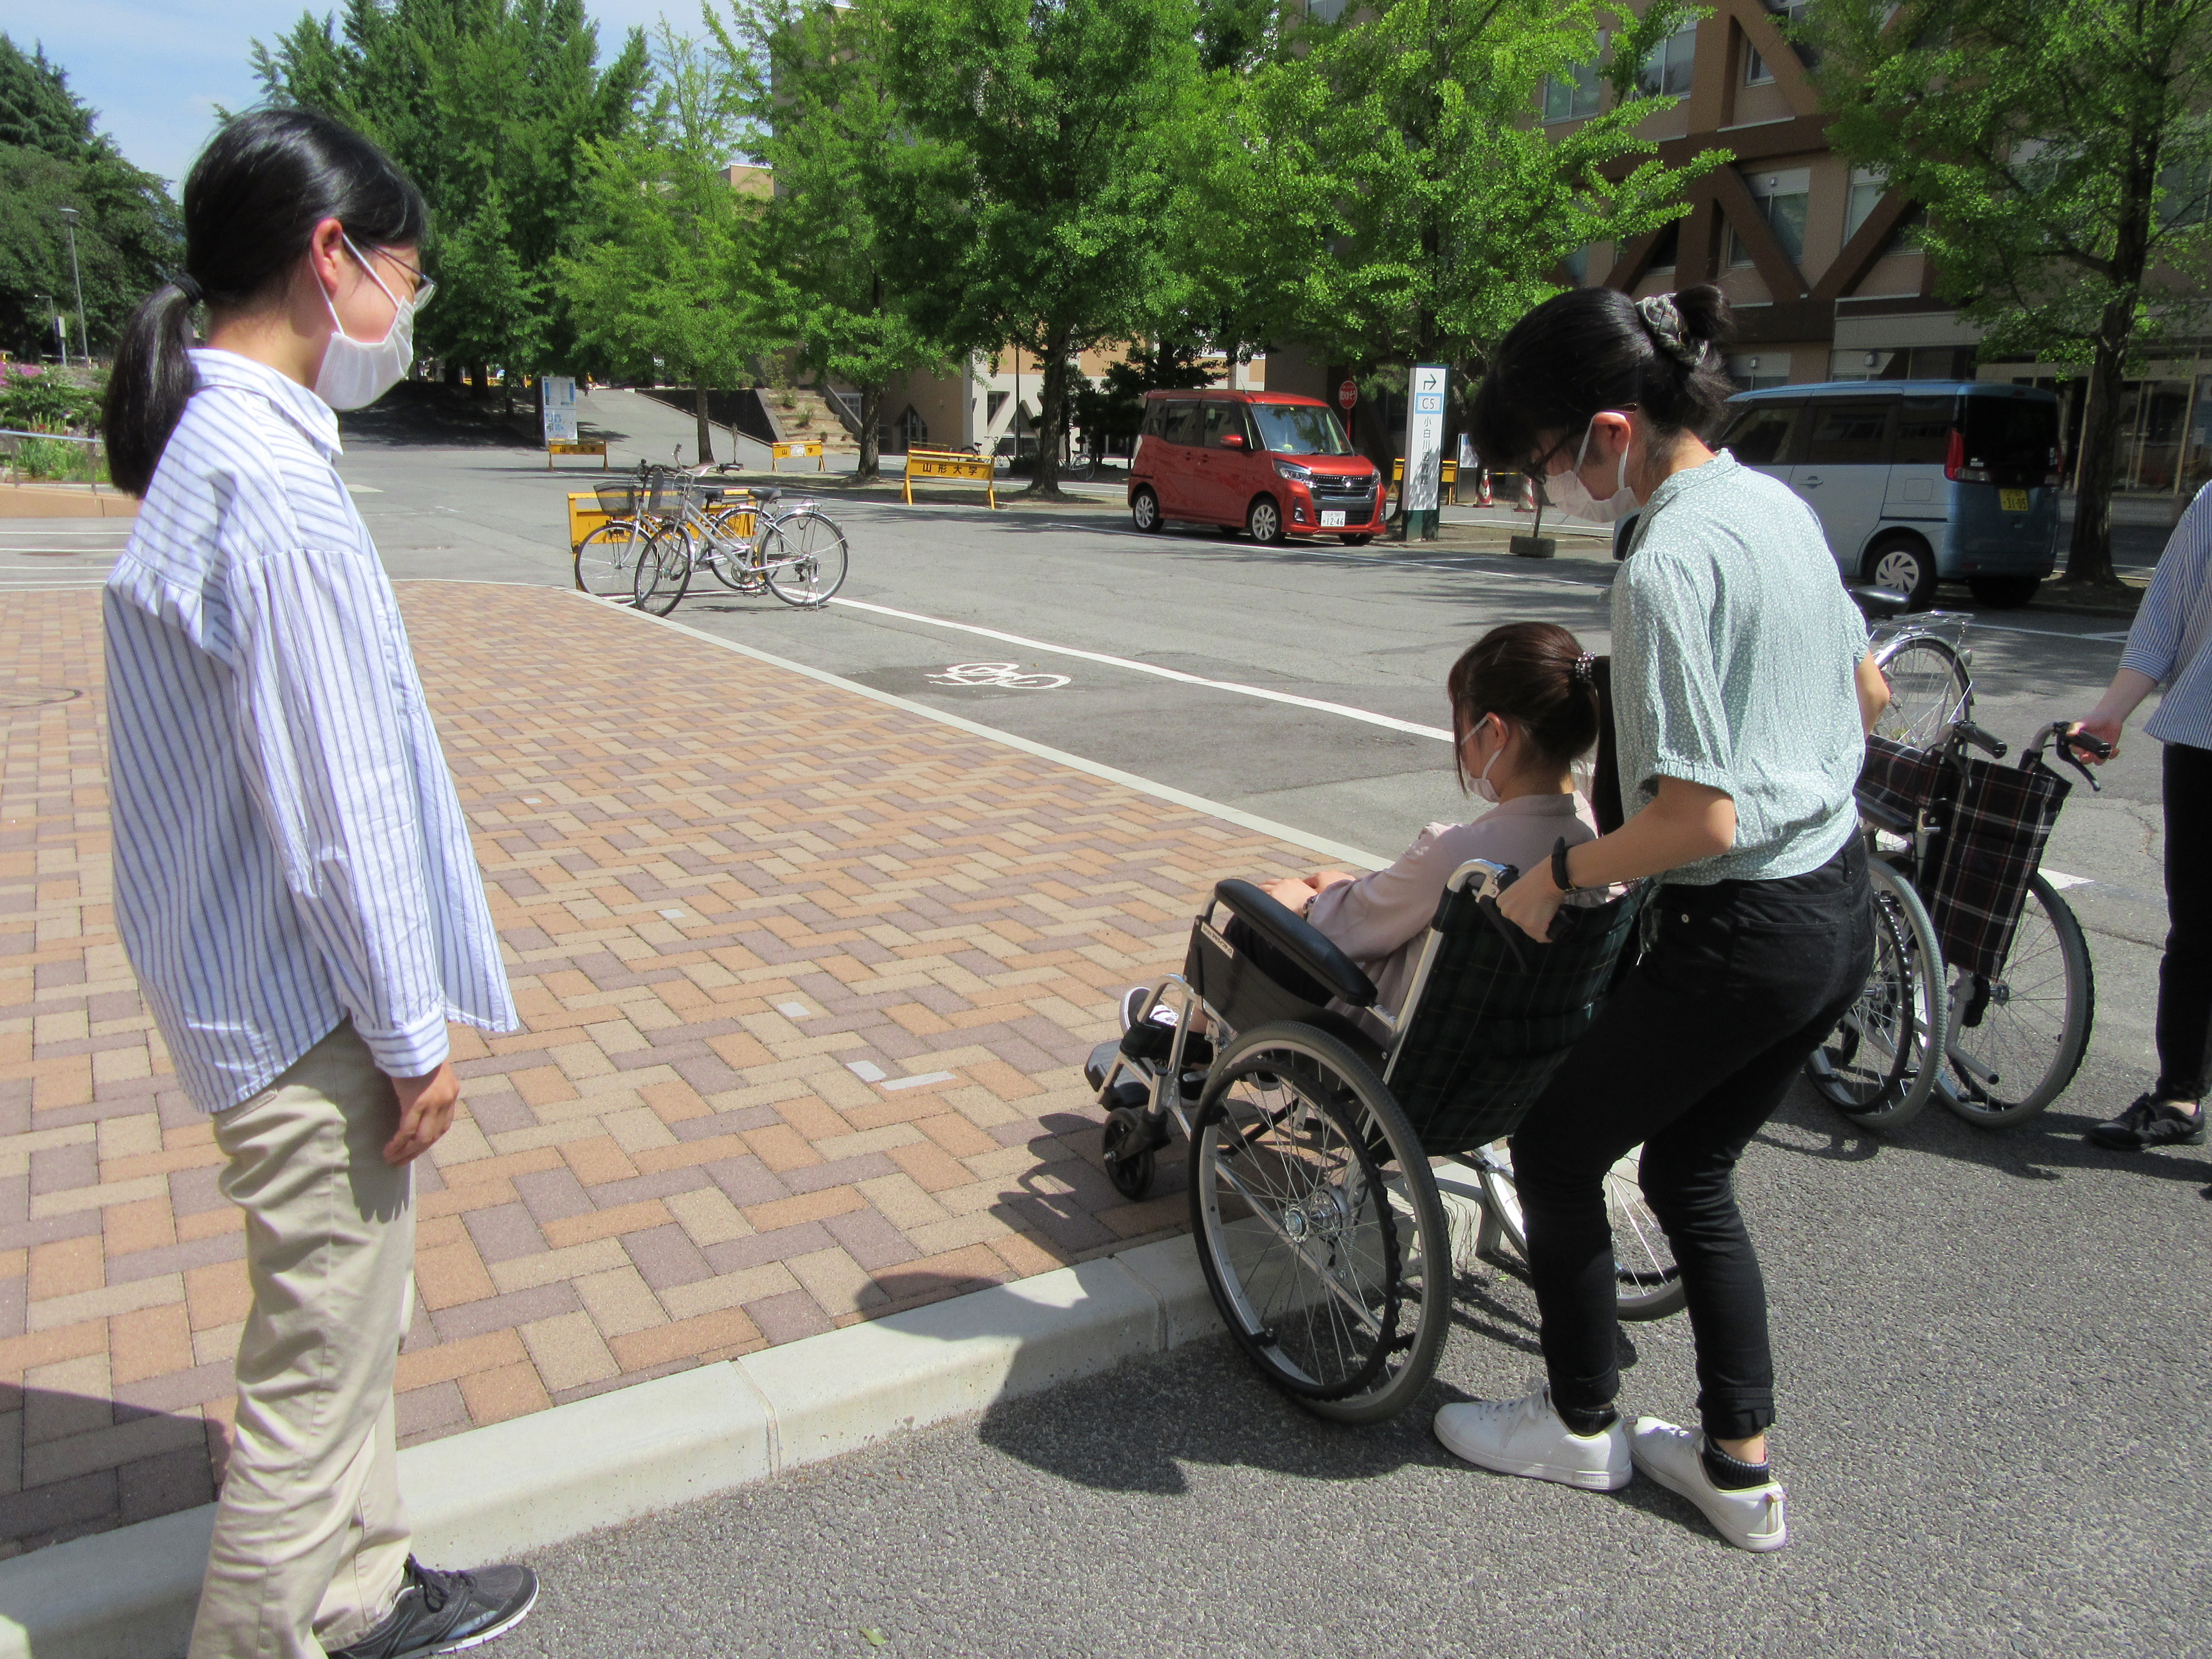 １人の受講生が車椅子に乗り、もう１人は車椅子を押して段差昇降の練習をしている